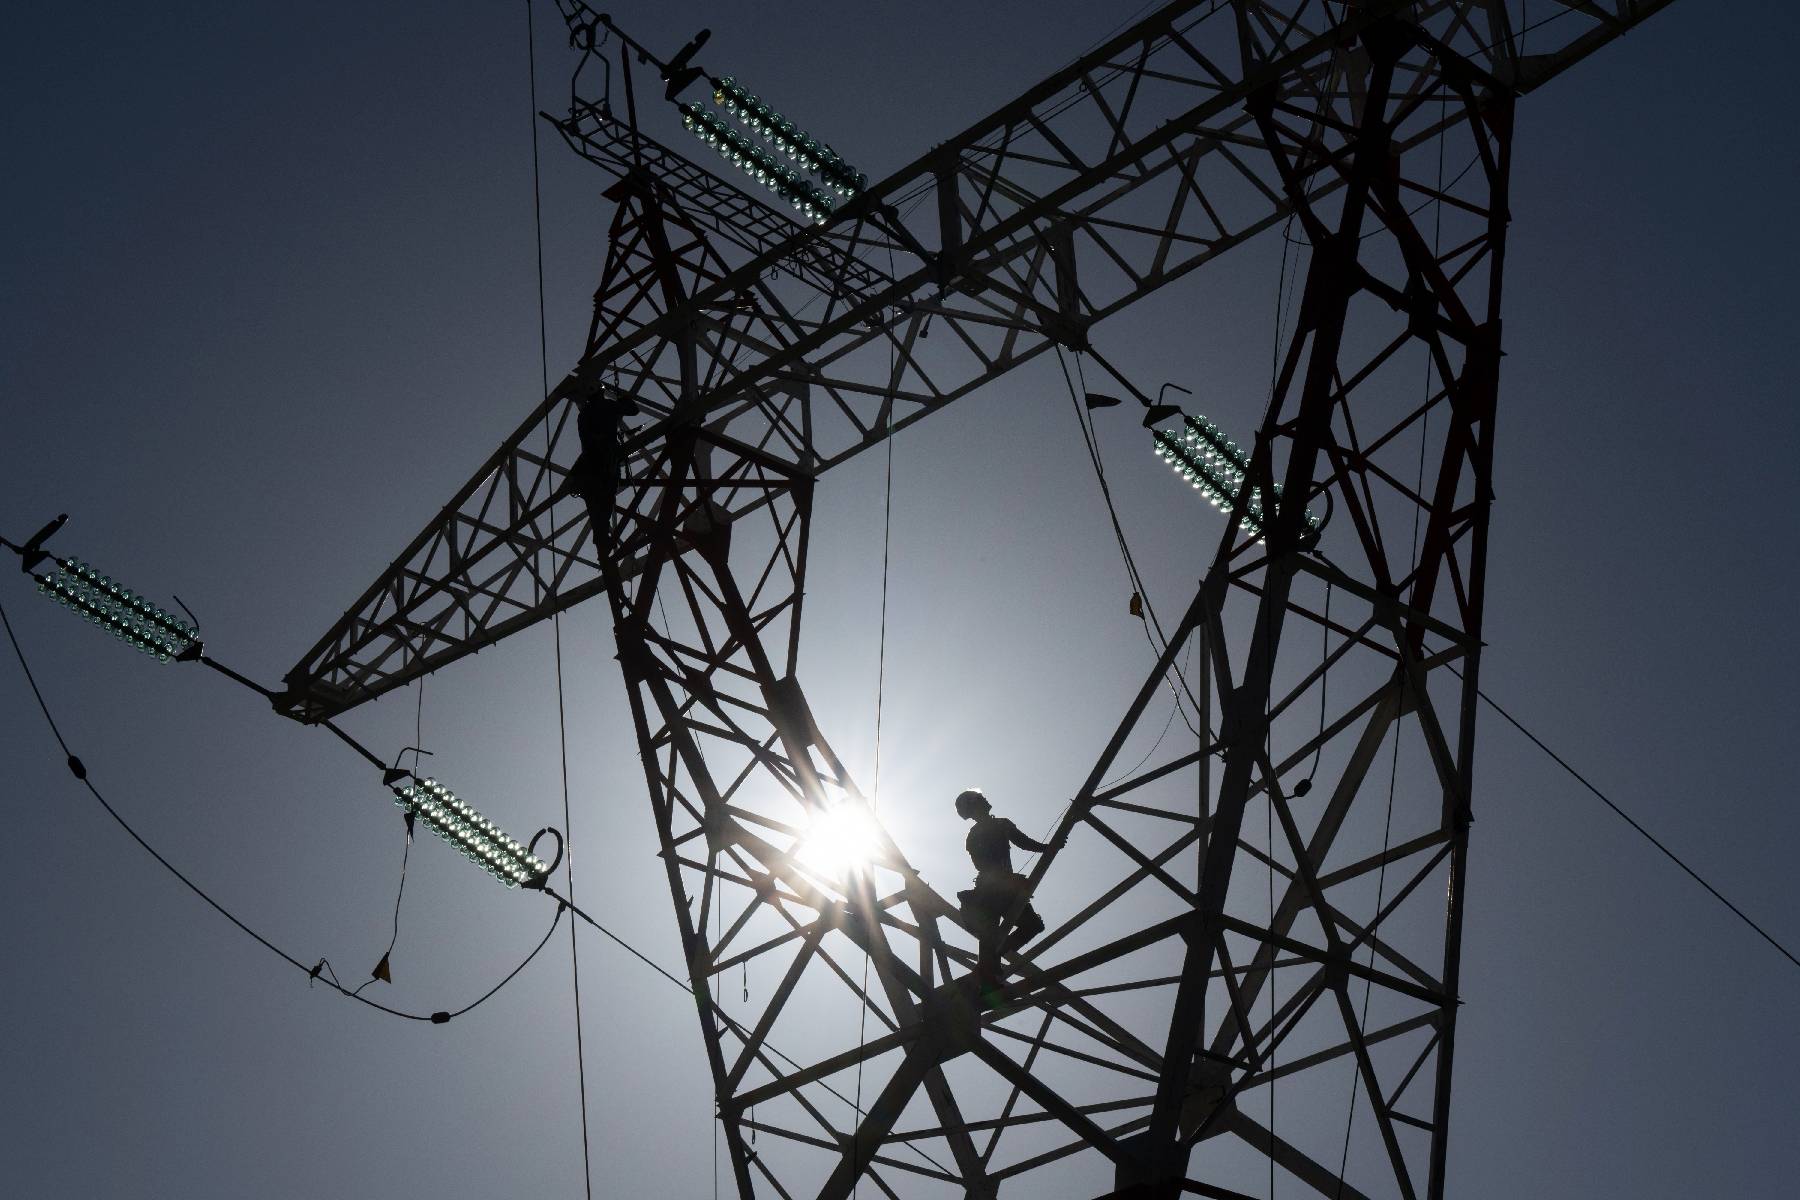 Électricité : la consommation a baissé de 10% en France la semaine dernière, annonce RTE